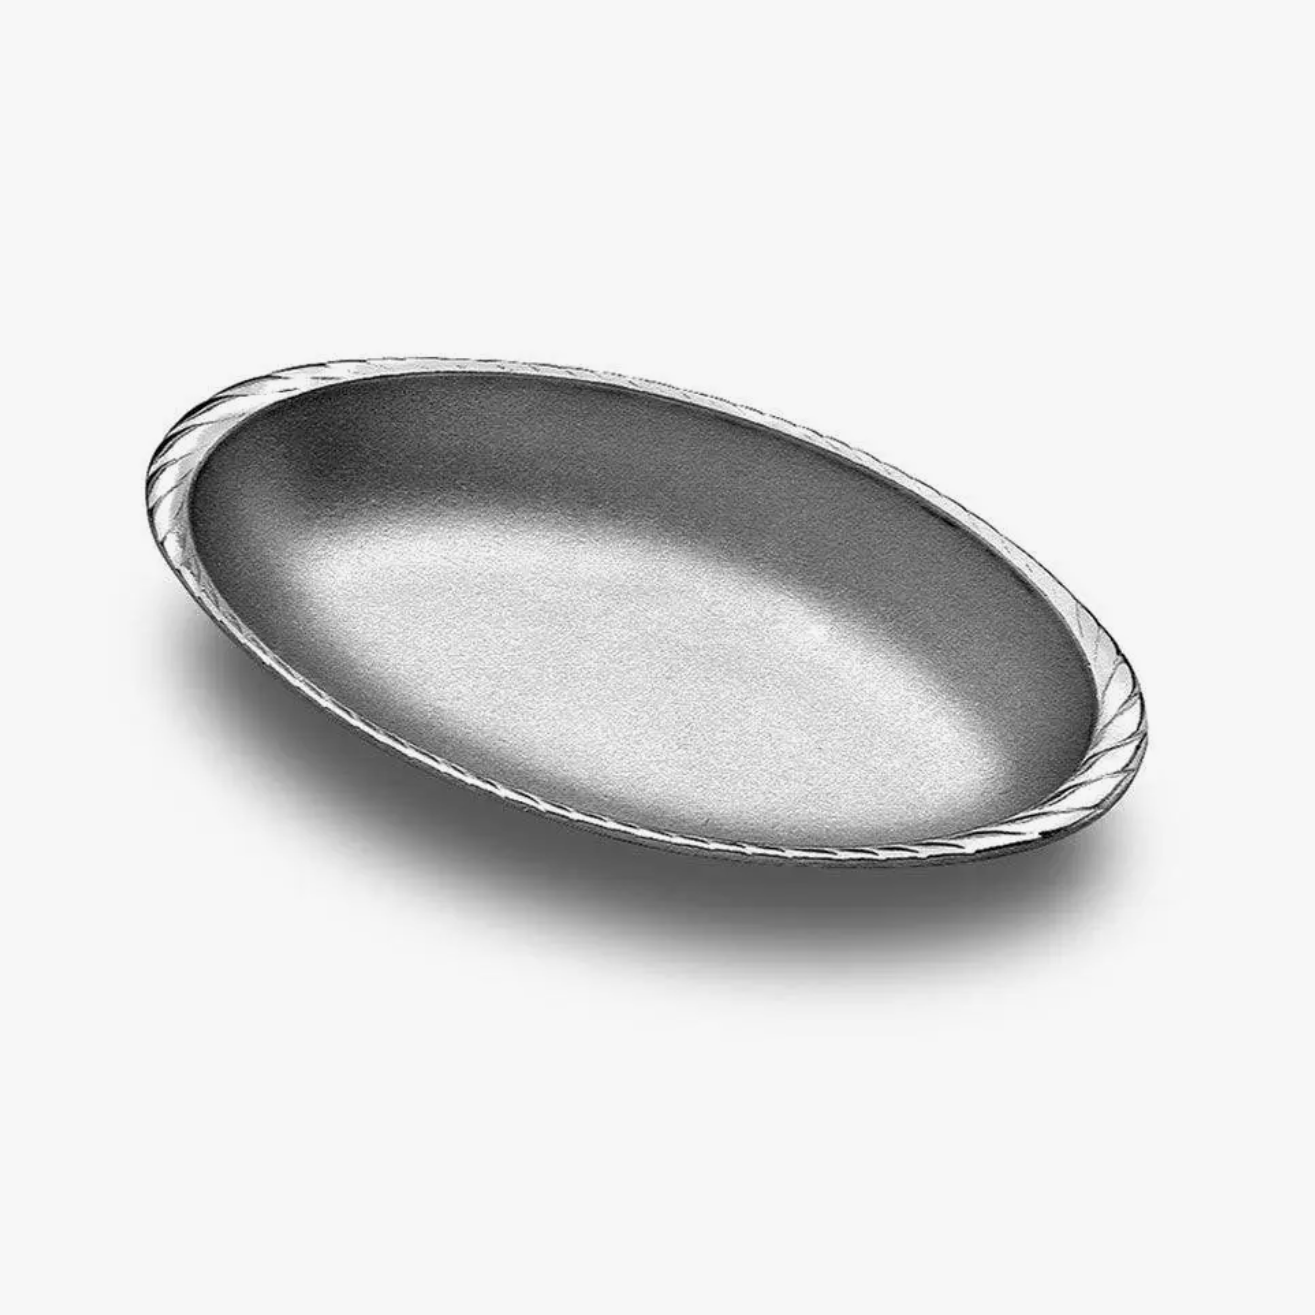 Gourmet Grillware Medium Oval Au Gratin